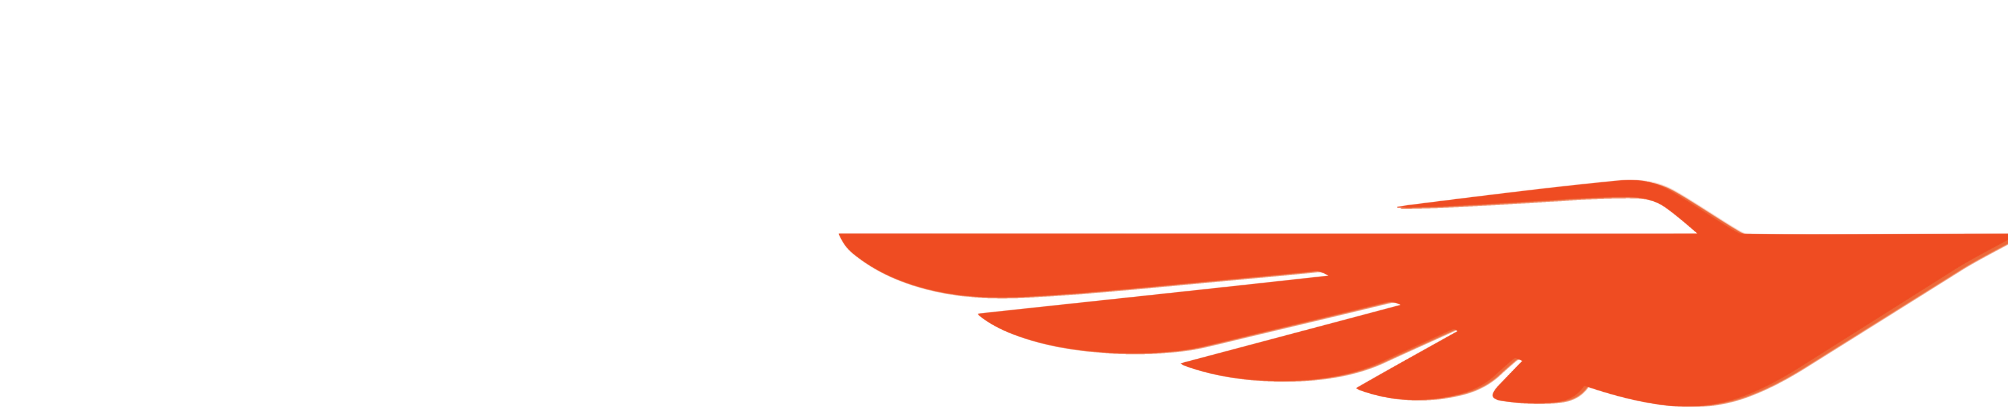 phantom-logo-canva